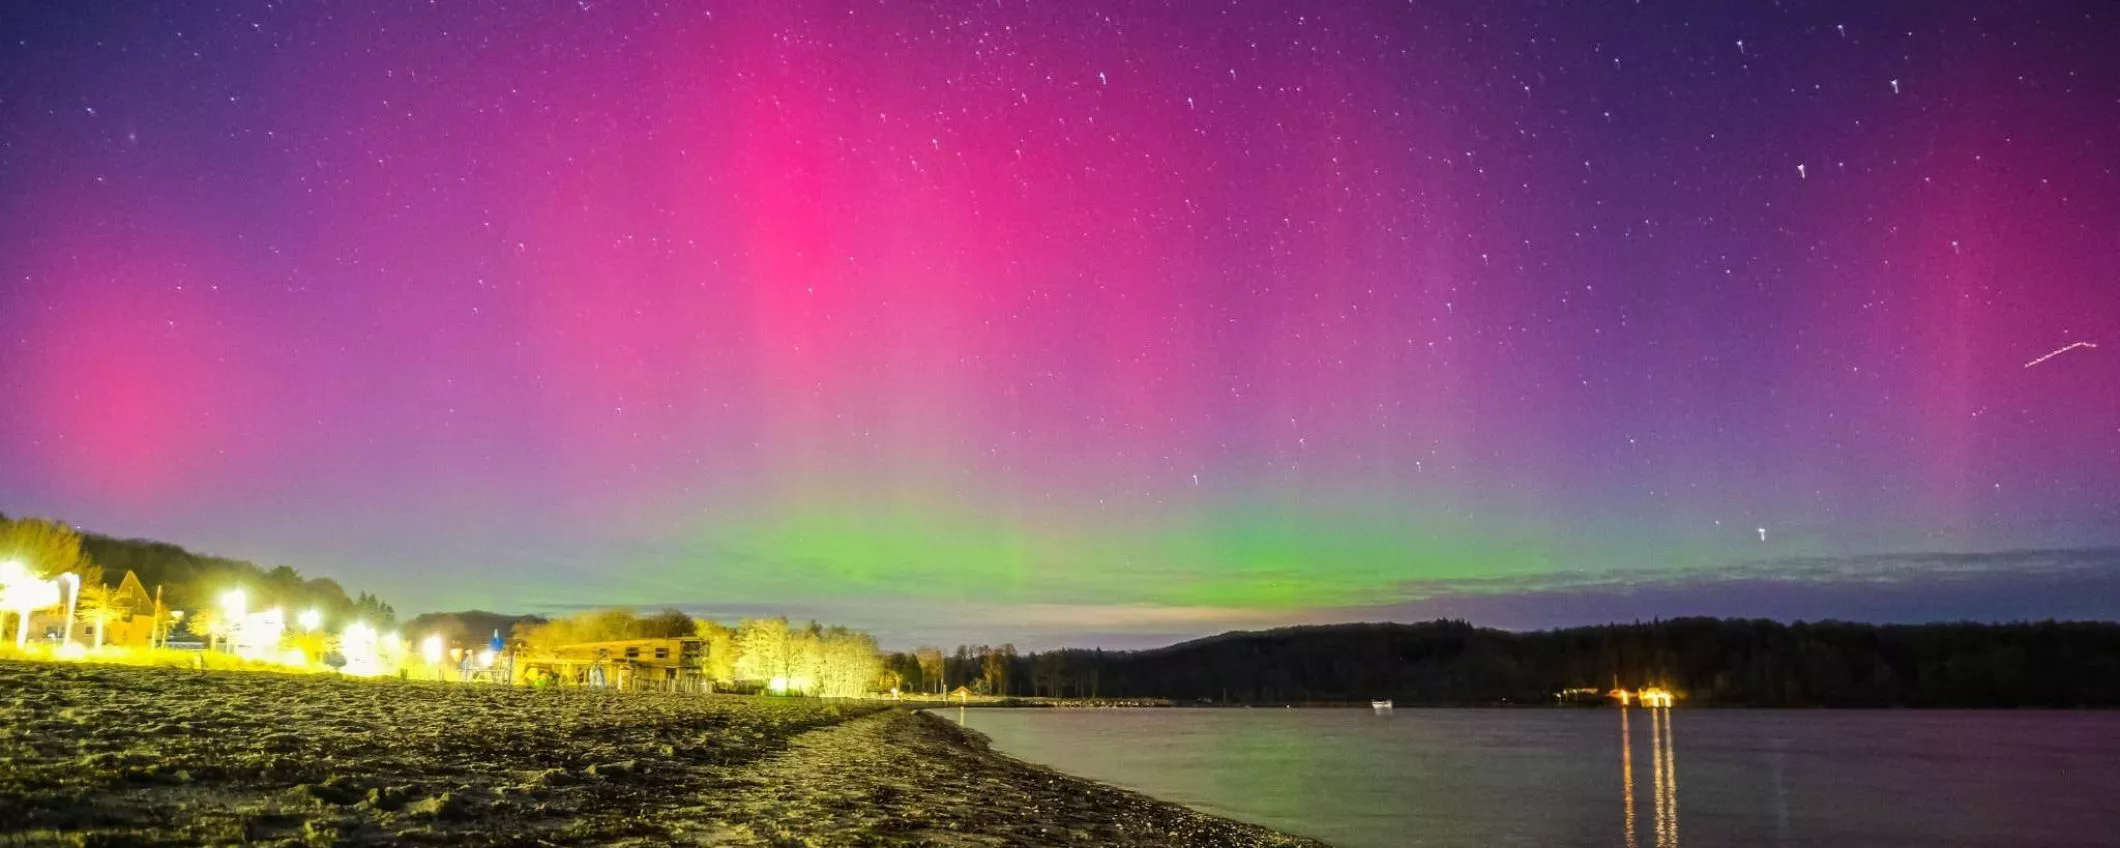 Torna l'aurora boreale in Italia: quando e dove vederla?